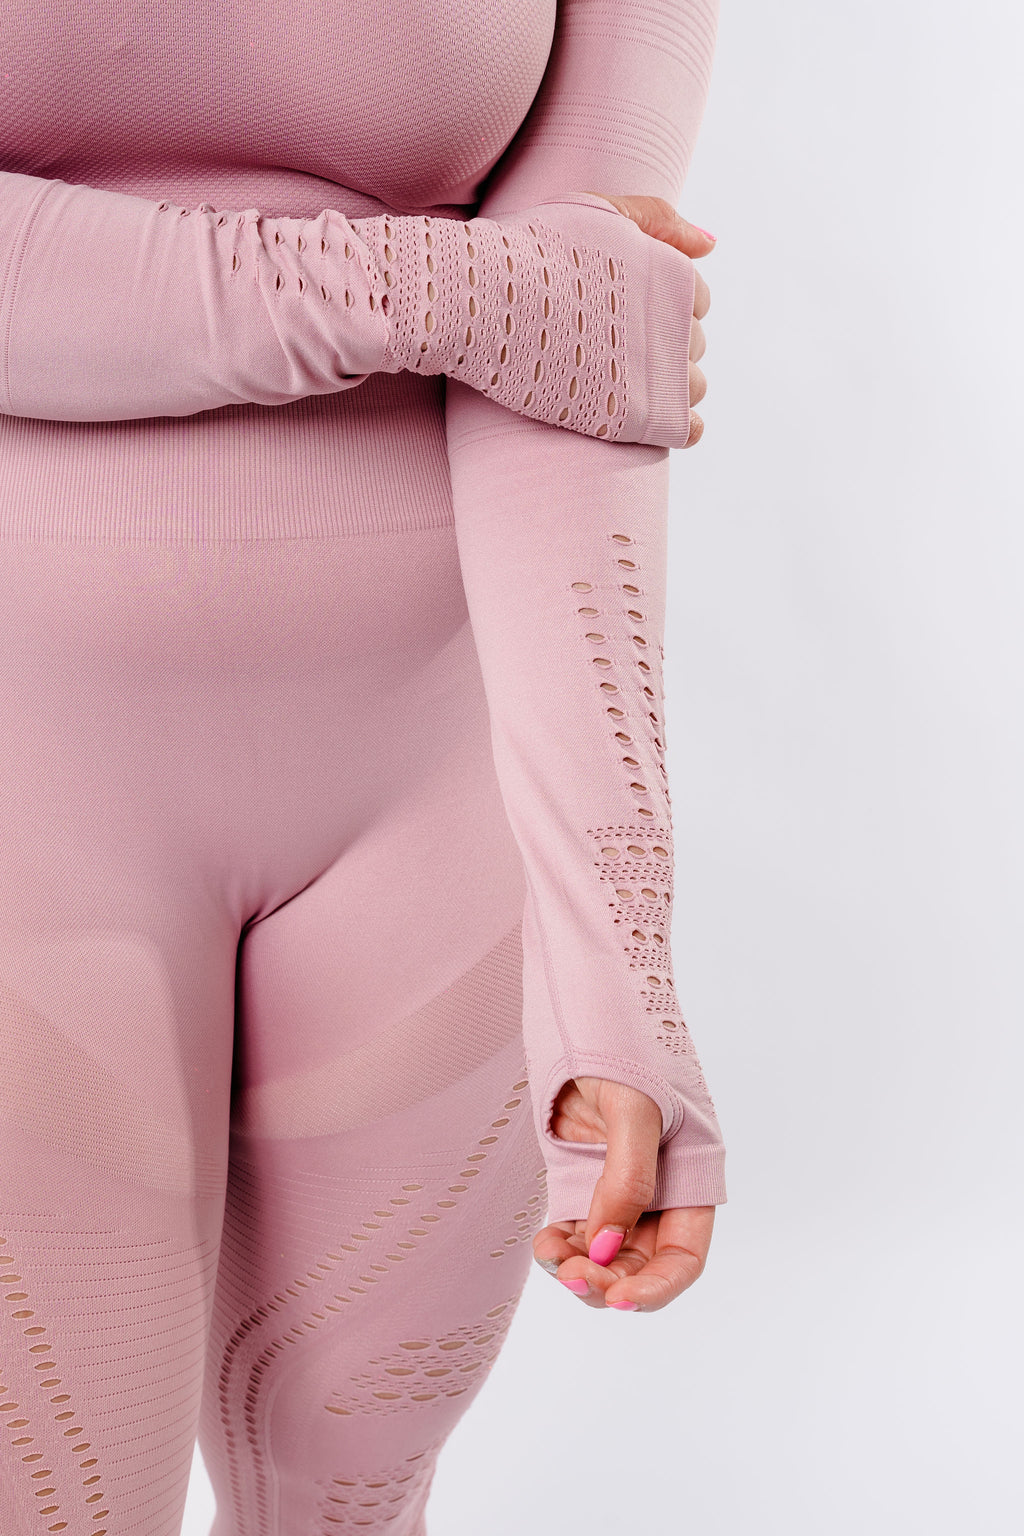 Sass Long Sleeve Crop Top - Blush Pink